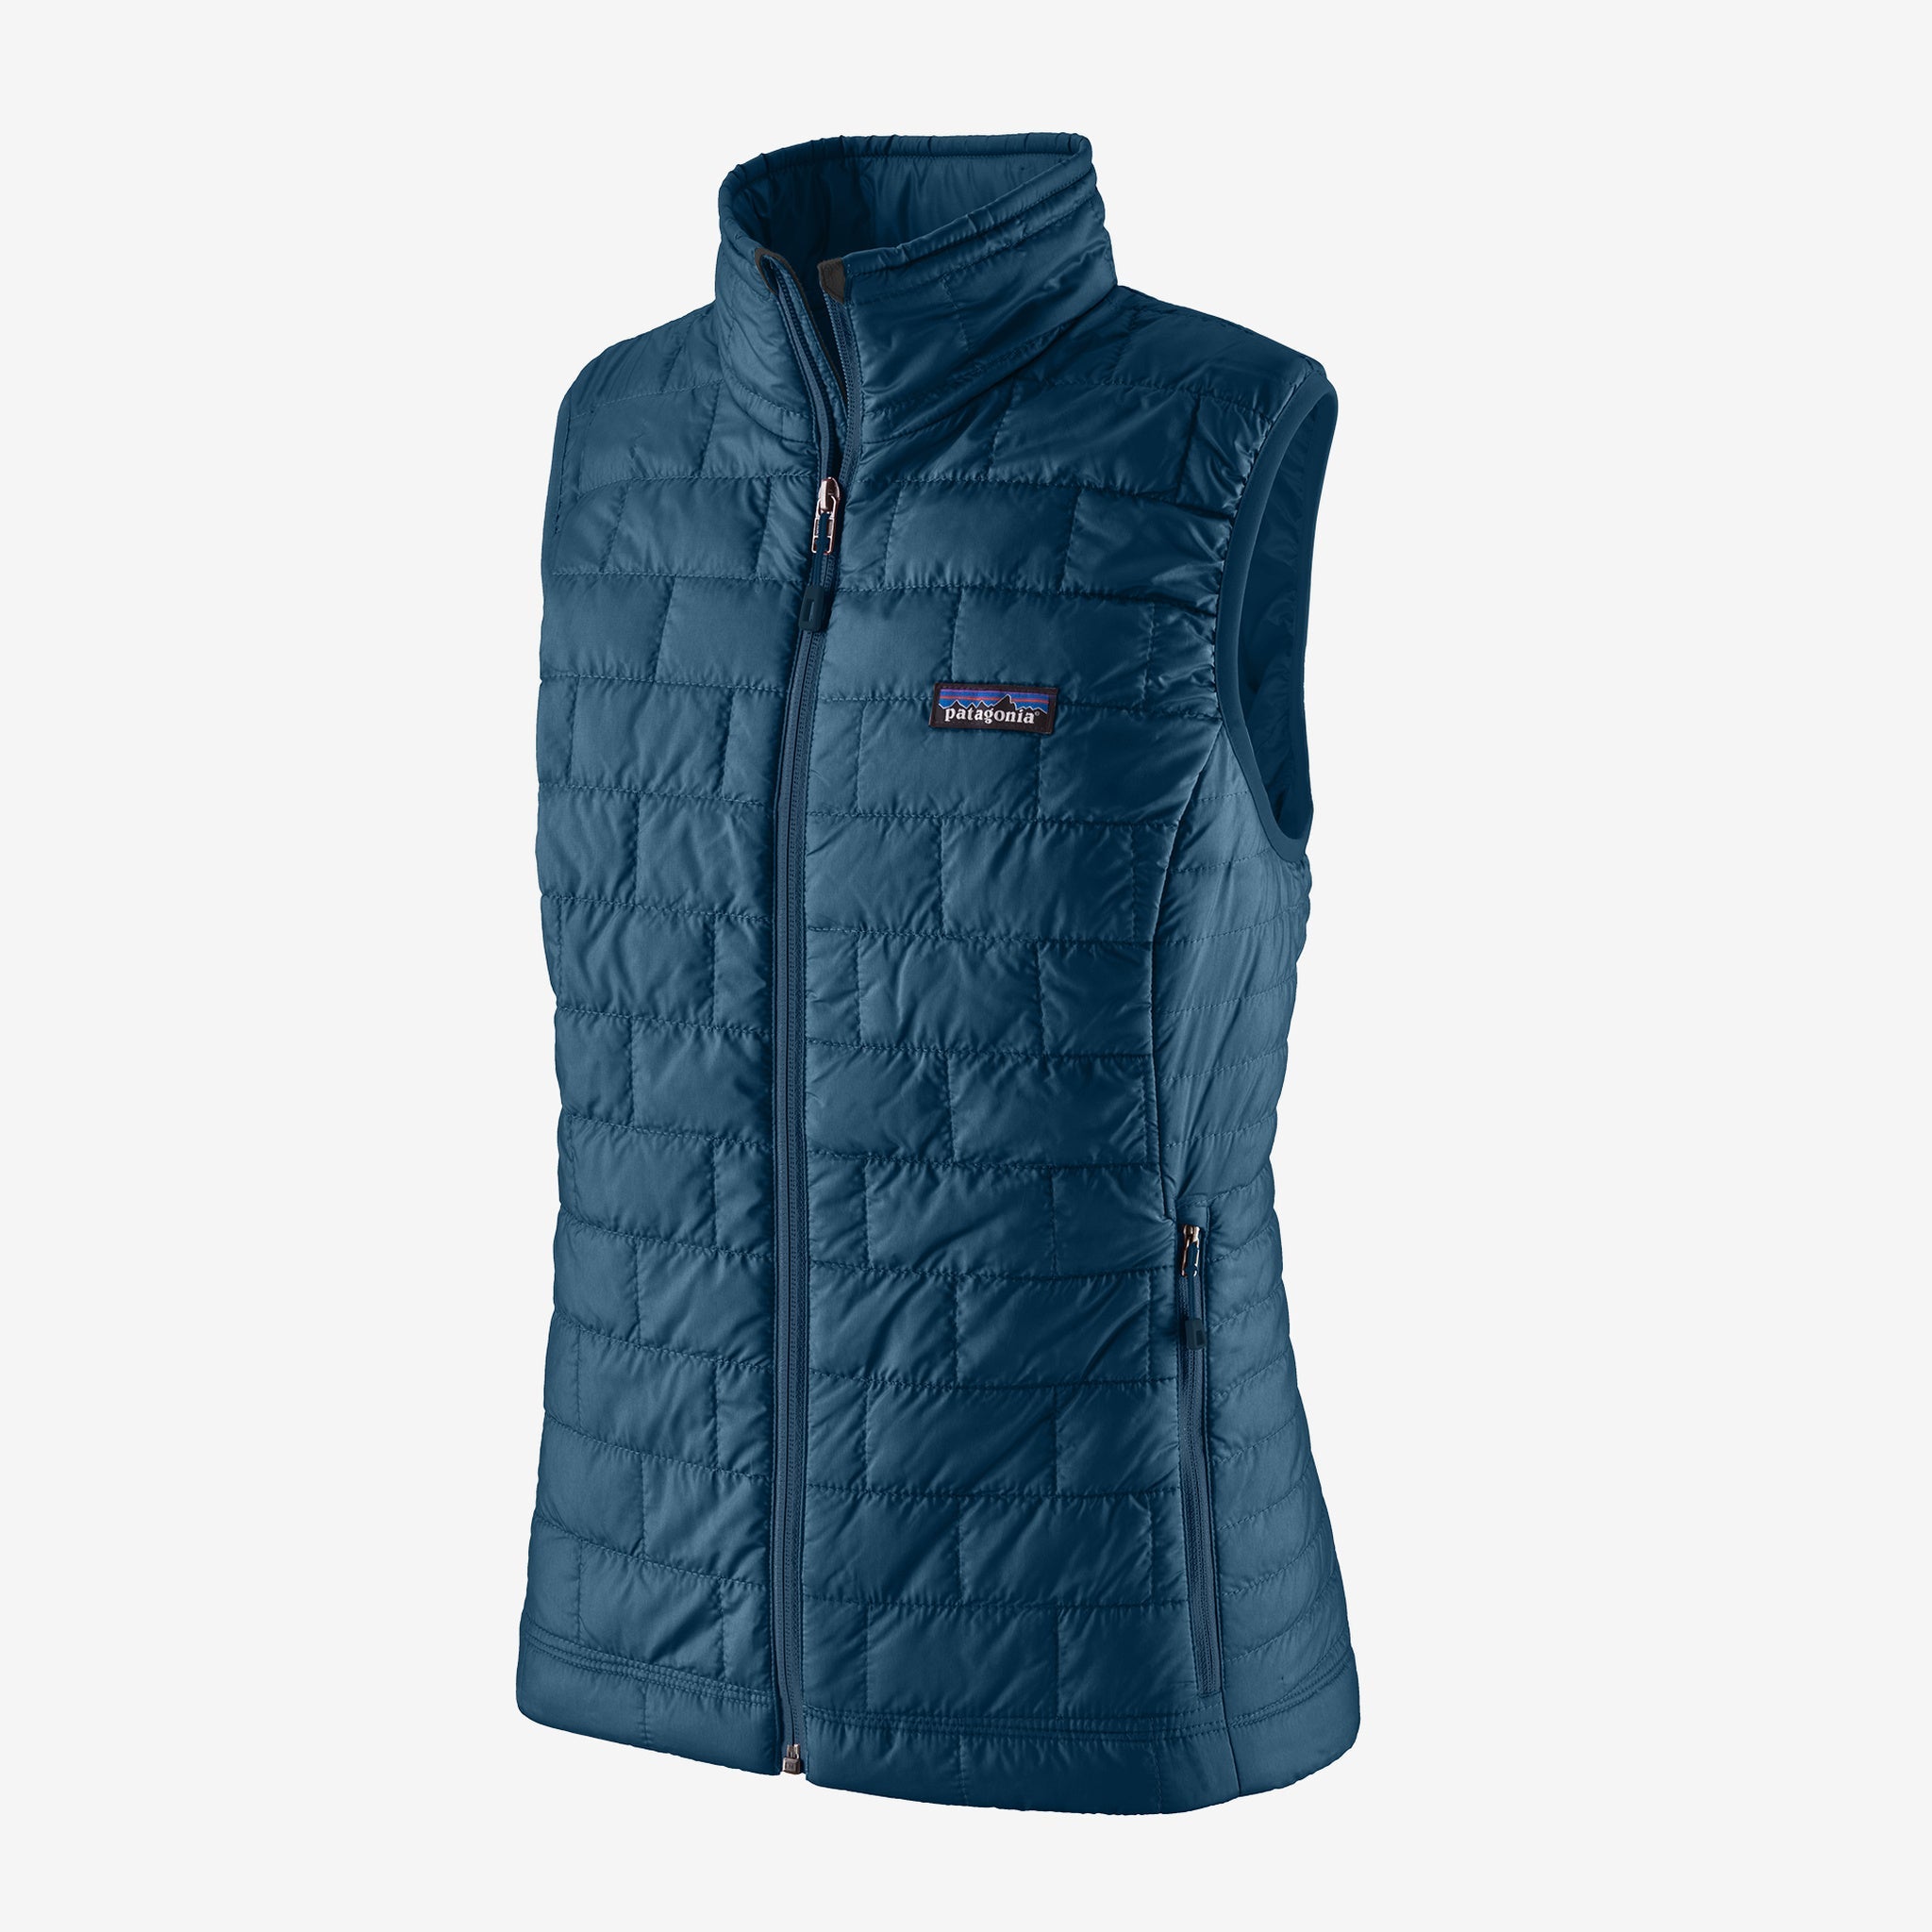 Women's Nano Puff® Vest - Patagonia Australia